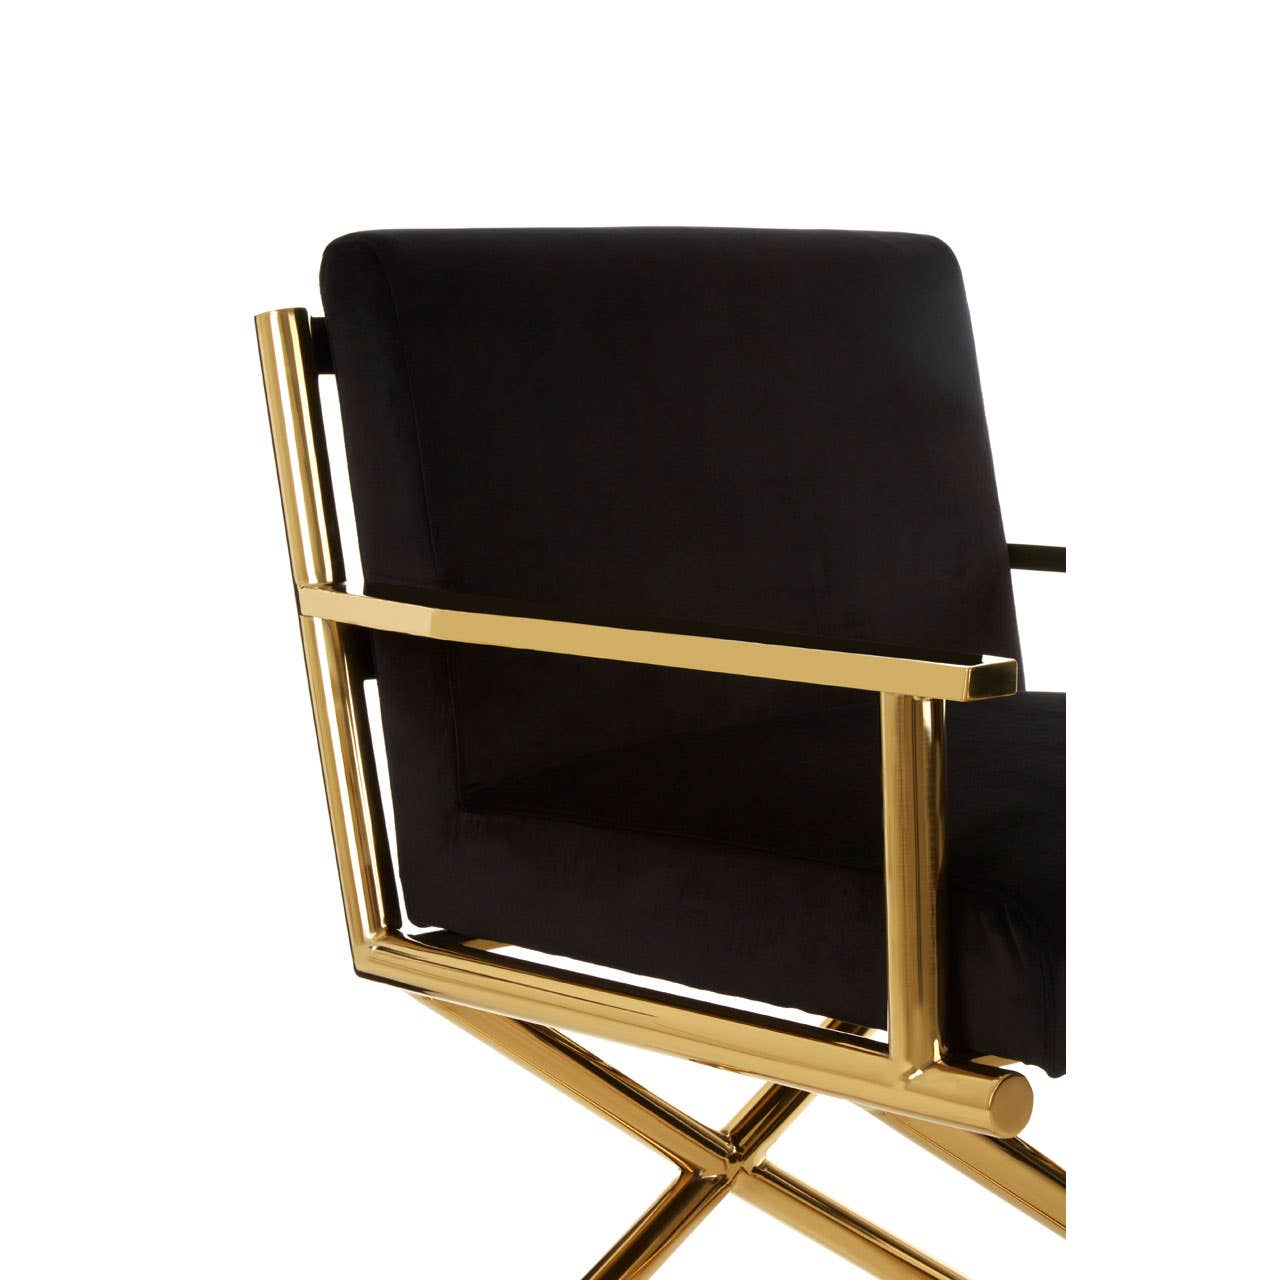 Noosa & Co. Living Hendricks Black Velvet Chair House of Isabella UK